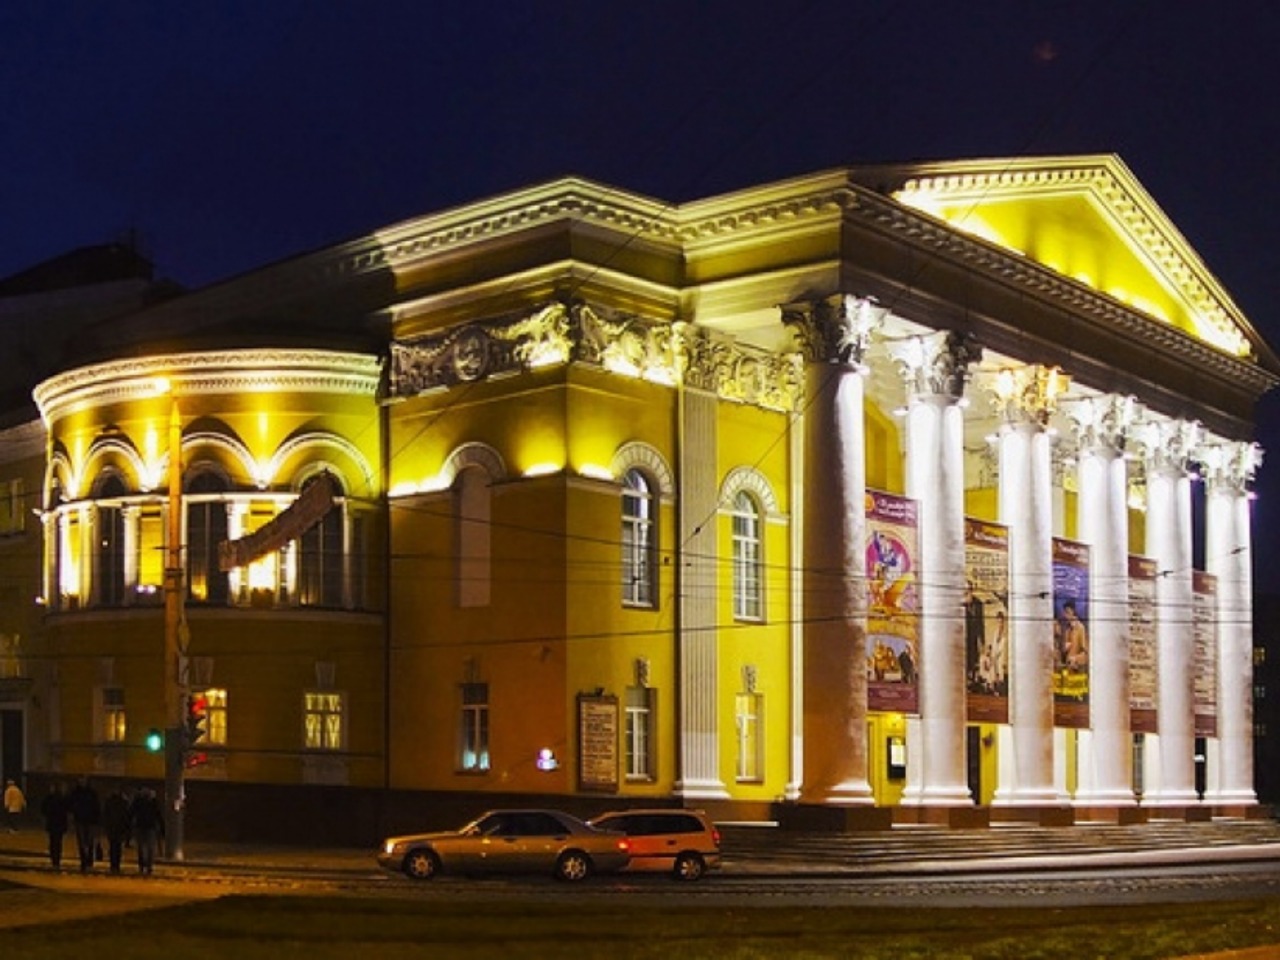 Калининград: коротко о главном | Цена 540₽, отзывы, описание экскурсии